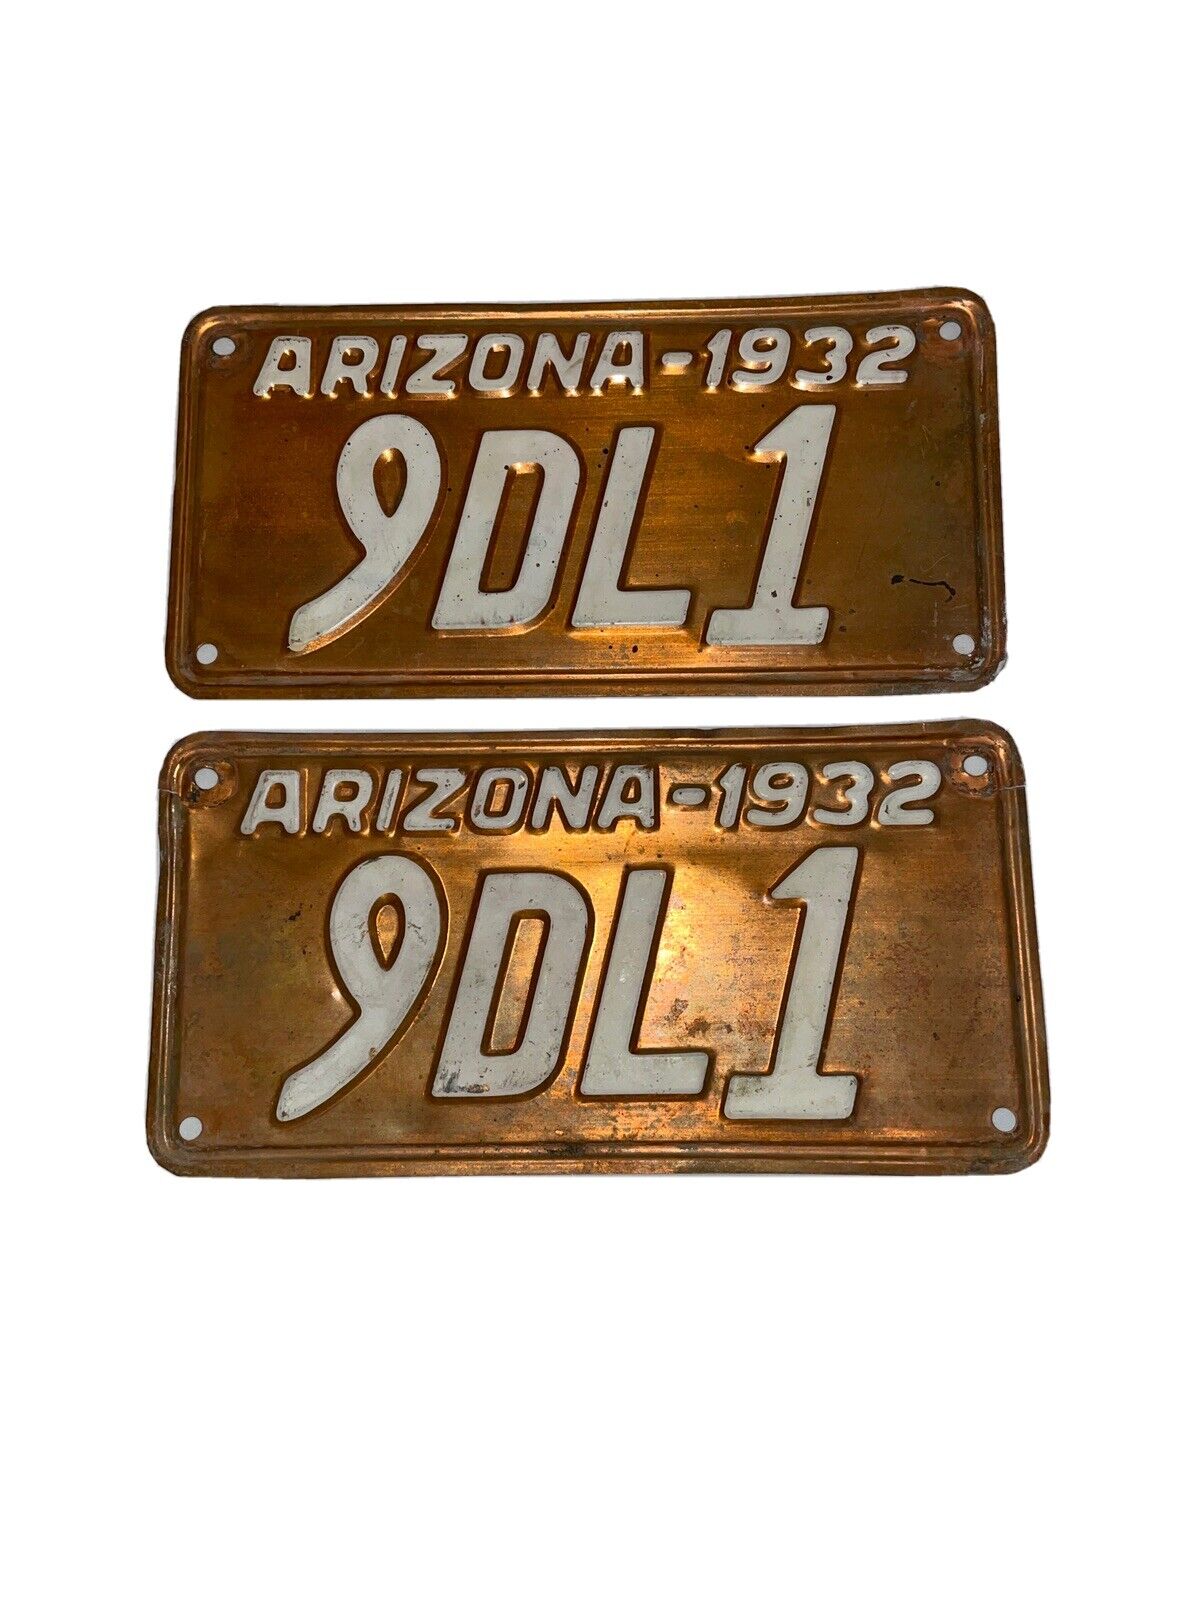 1932 Arizona Copper License Plates Pair 9DL1